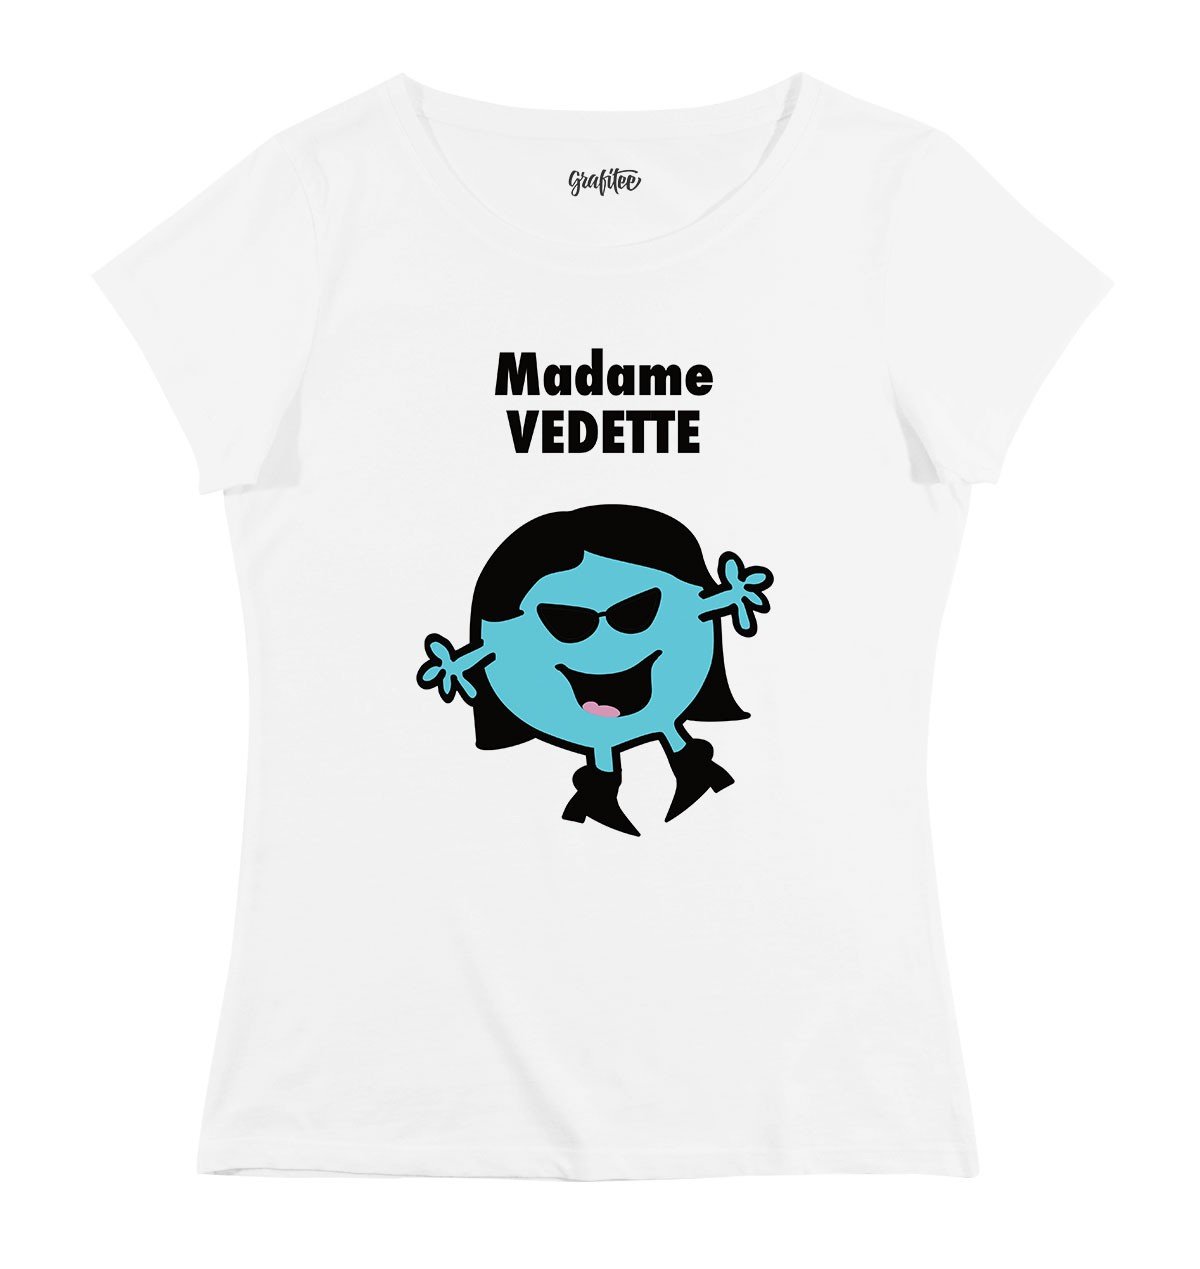 T-shirt Femme avec un Madame Vedette Grafitee